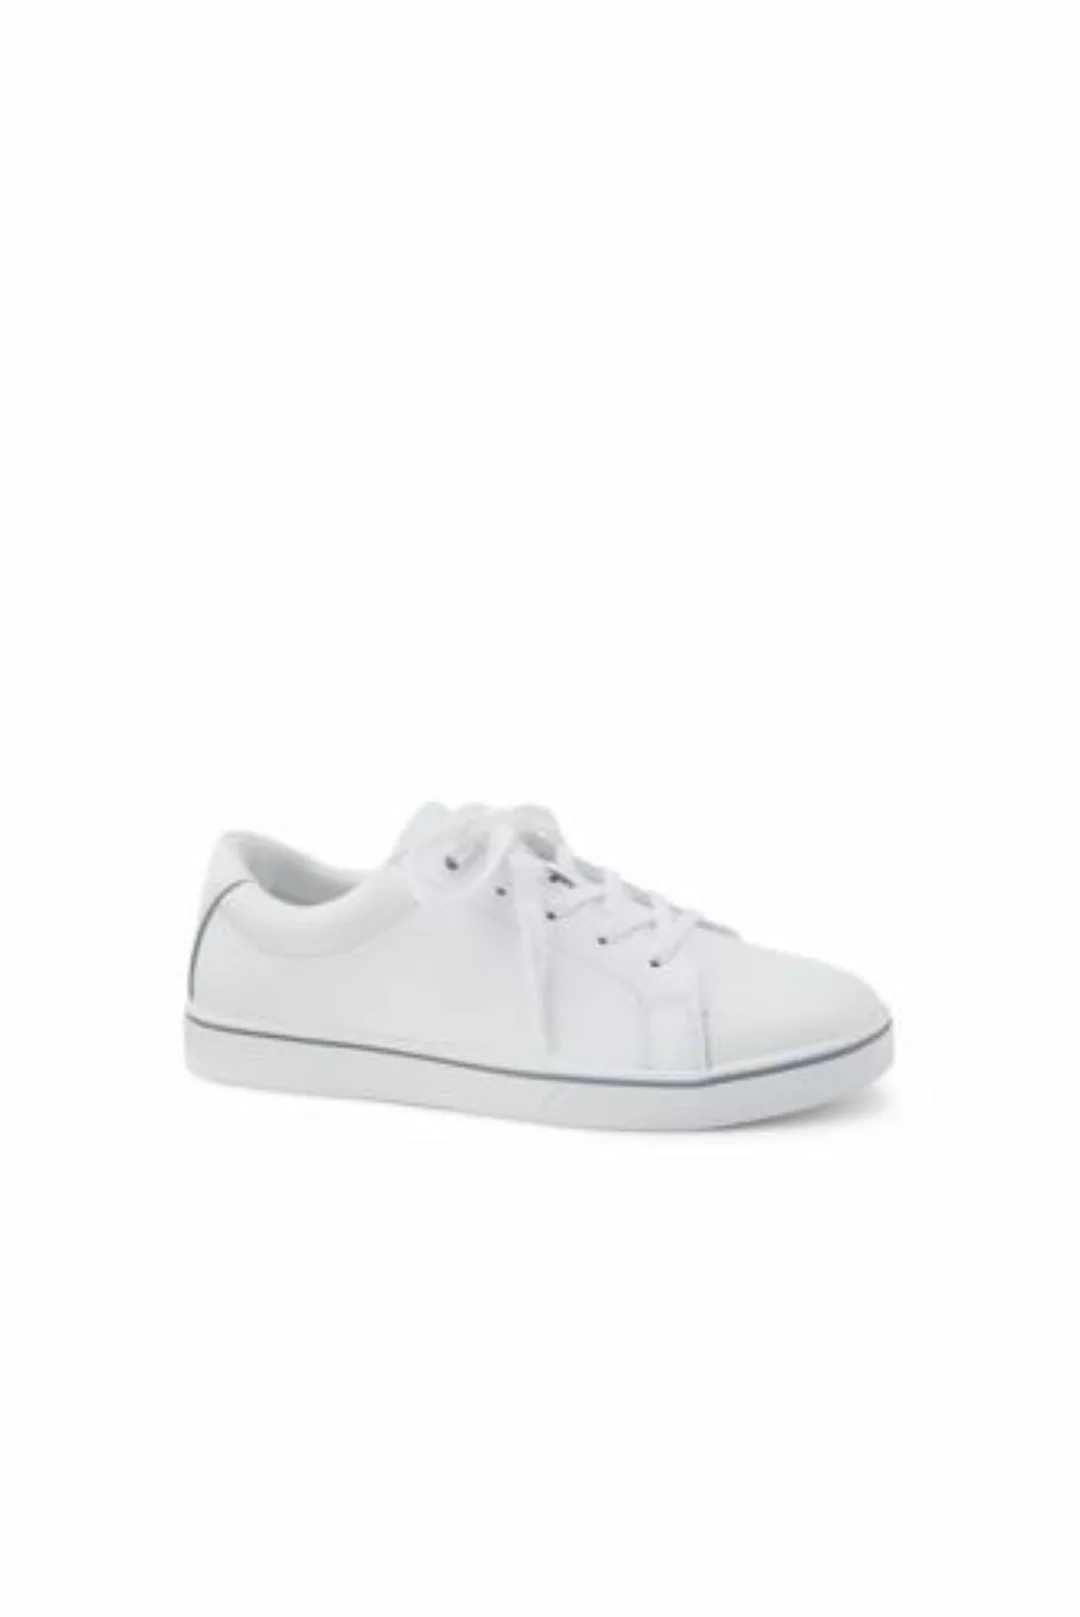 Sneaker, Damen, Größe: 38.5 Normal, Weiß, Leder, by Lands' End, Weiß Leder günstig online kaufen